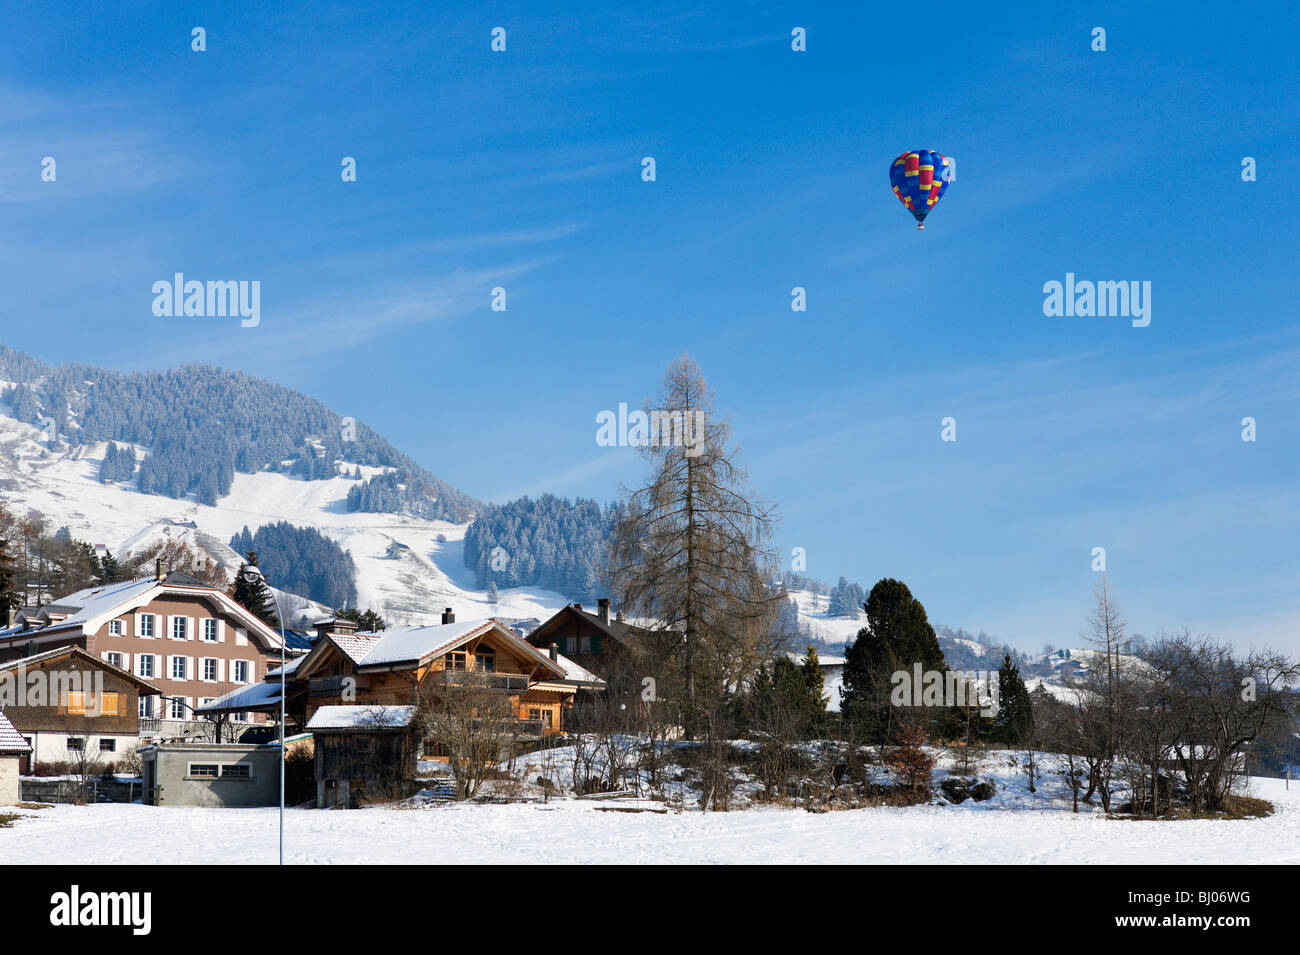 Einzelne Heißluftballon über die Stadt während der Januar-Ballon-Festival, Chateau d ' Oex, Waadt, Schweiz Stockfoto